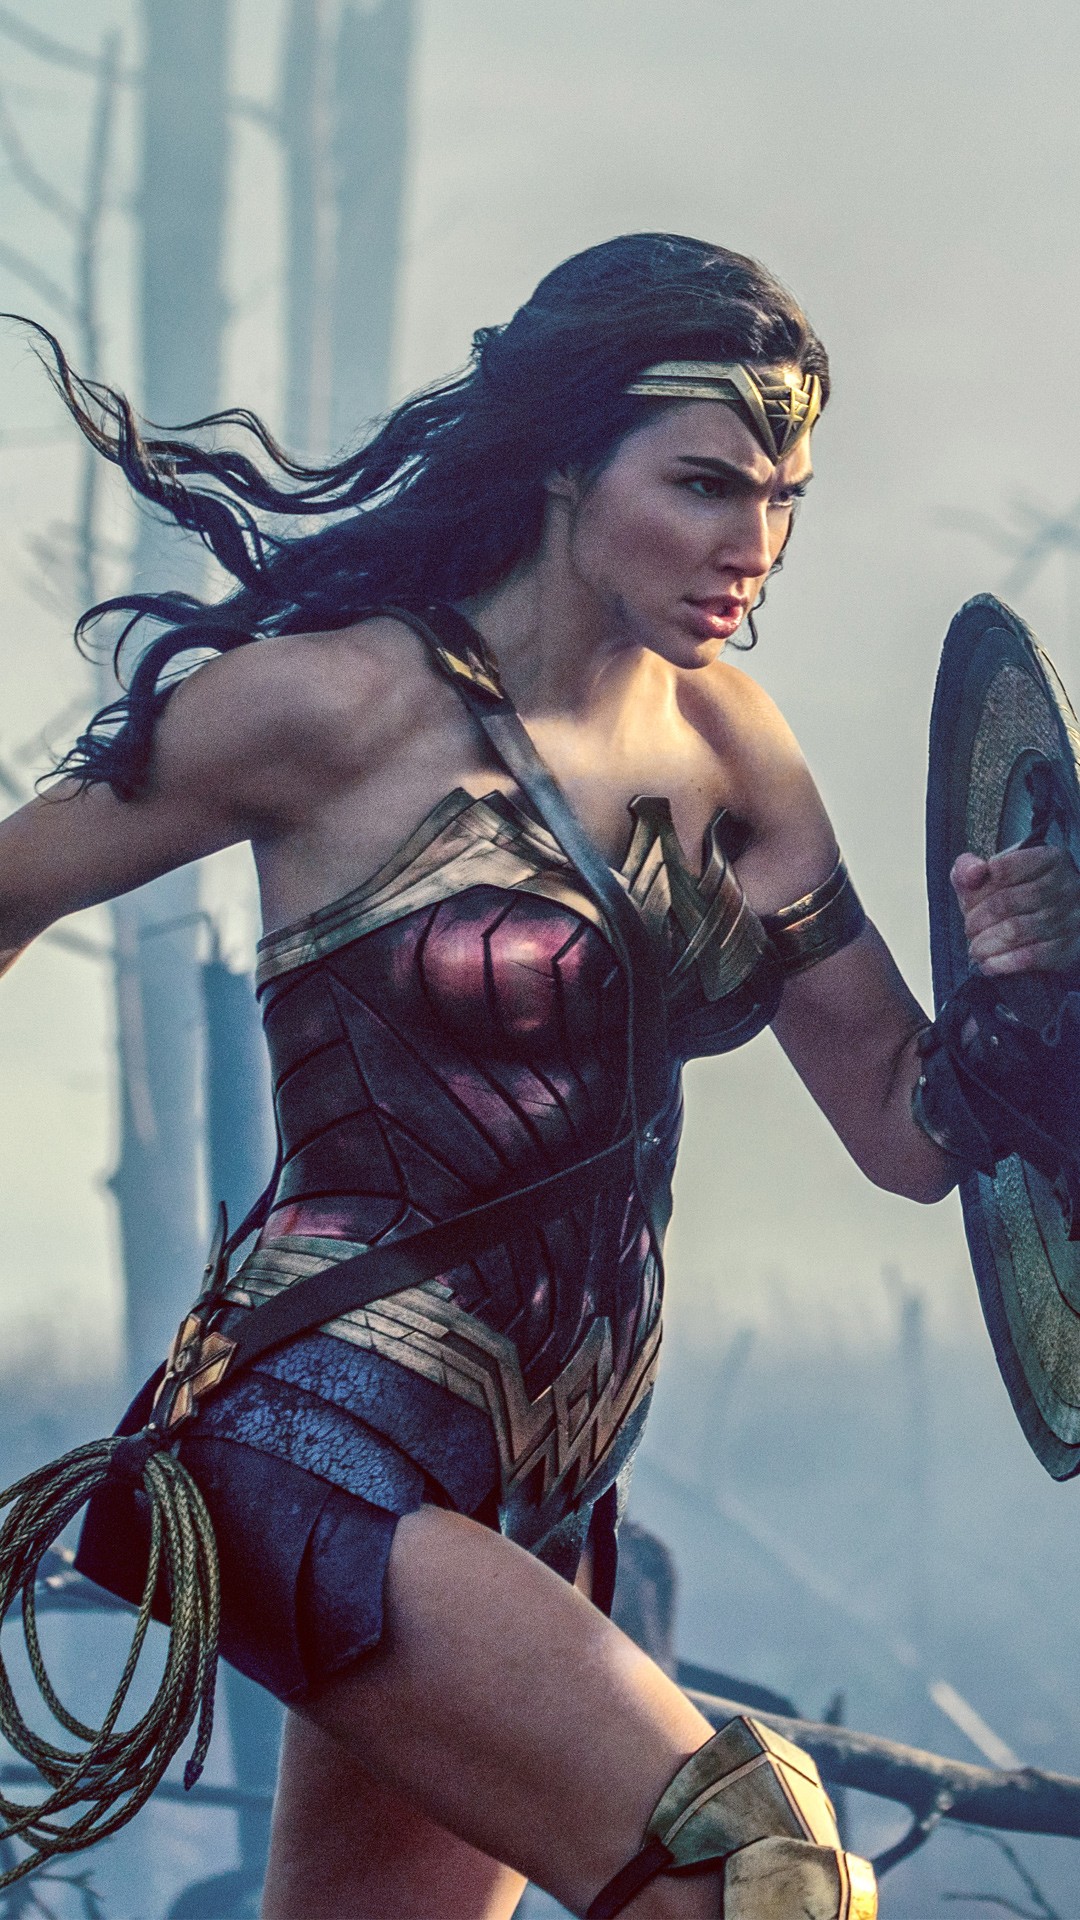 Wonder Woman - HD Wallpaper 